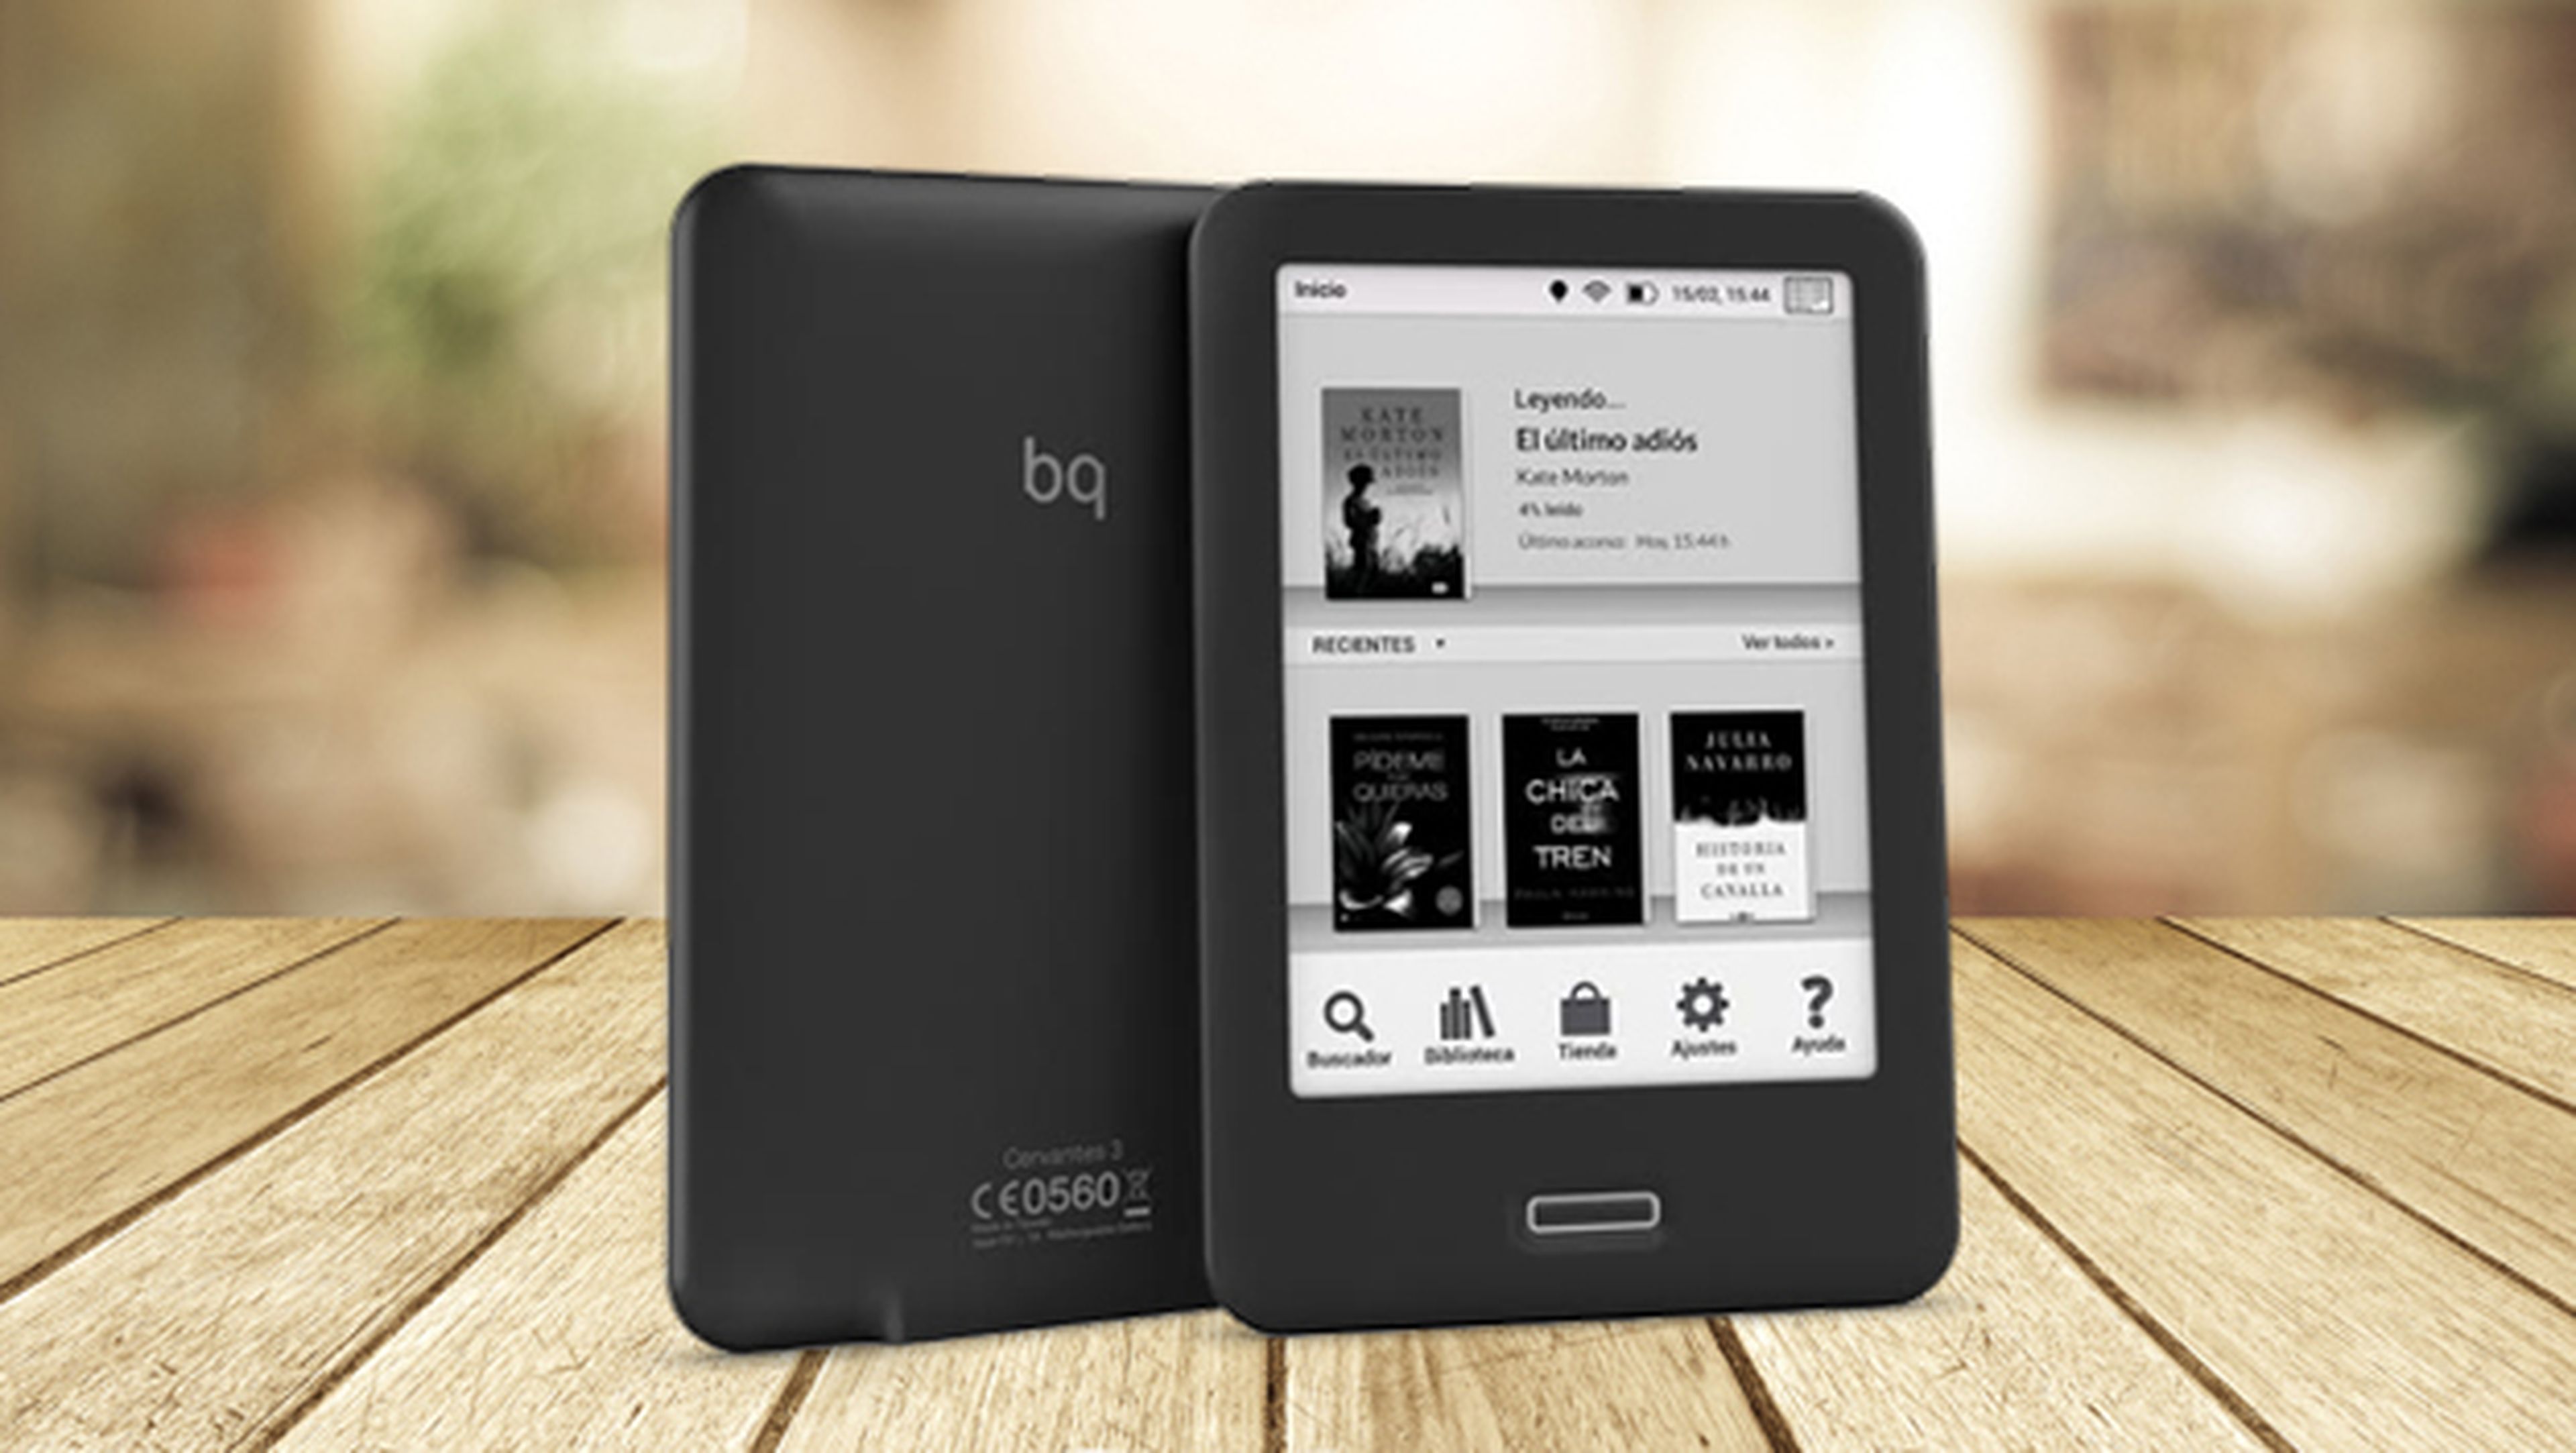 BQ lanza el Cervantes 3, un e-reader de última generación